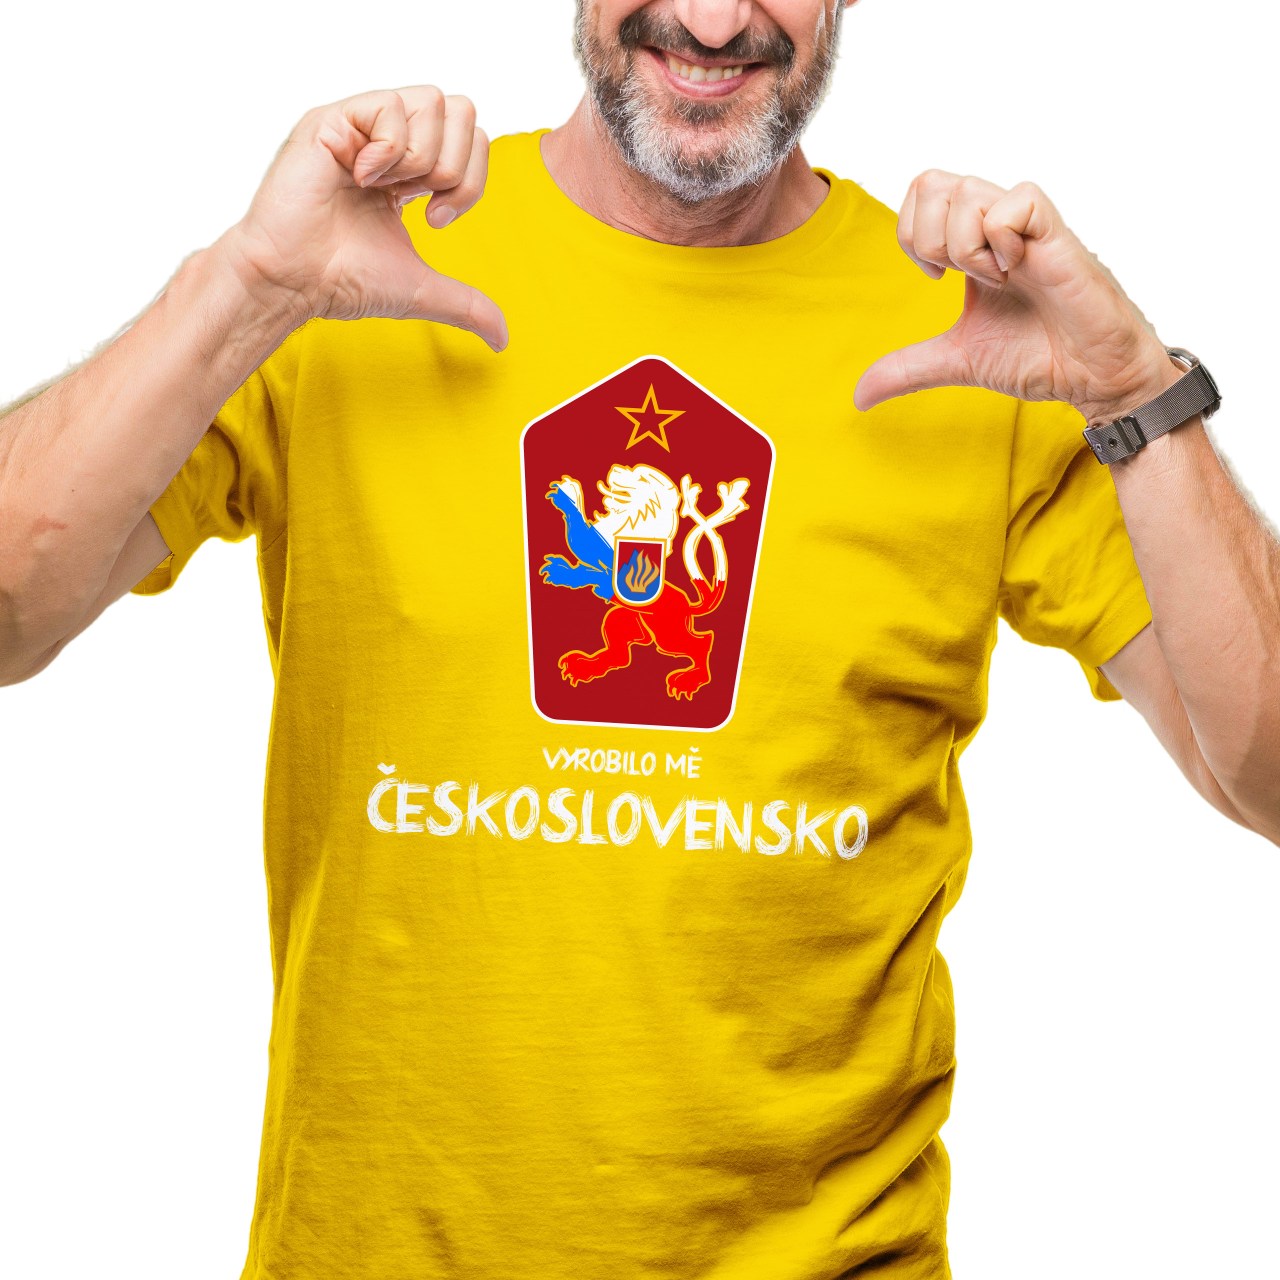 Pánské tričko s potiskem “Vyrobilo mě Československo”